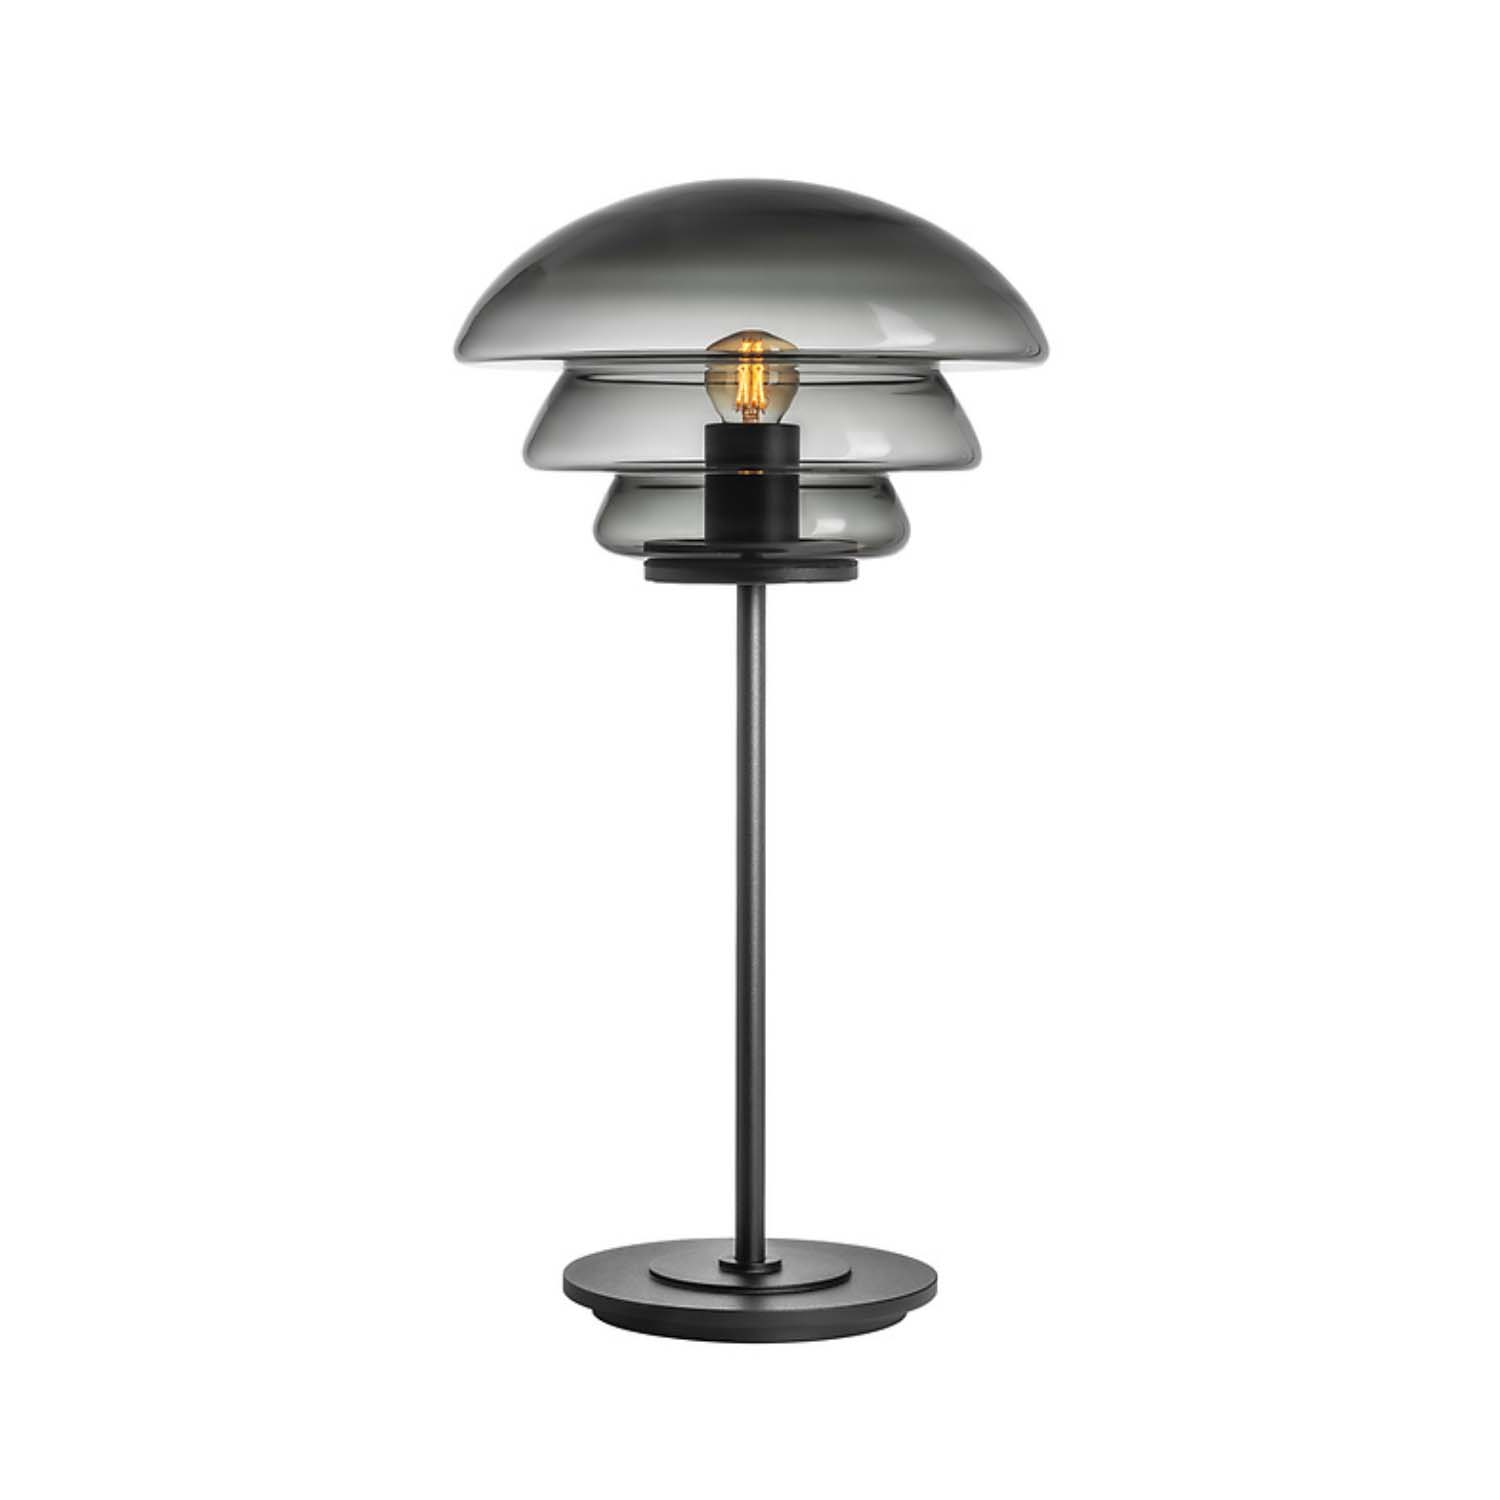 ARCHIV 4006 – Handgefertigte Tischlampe aus mundgeblasenem Glas